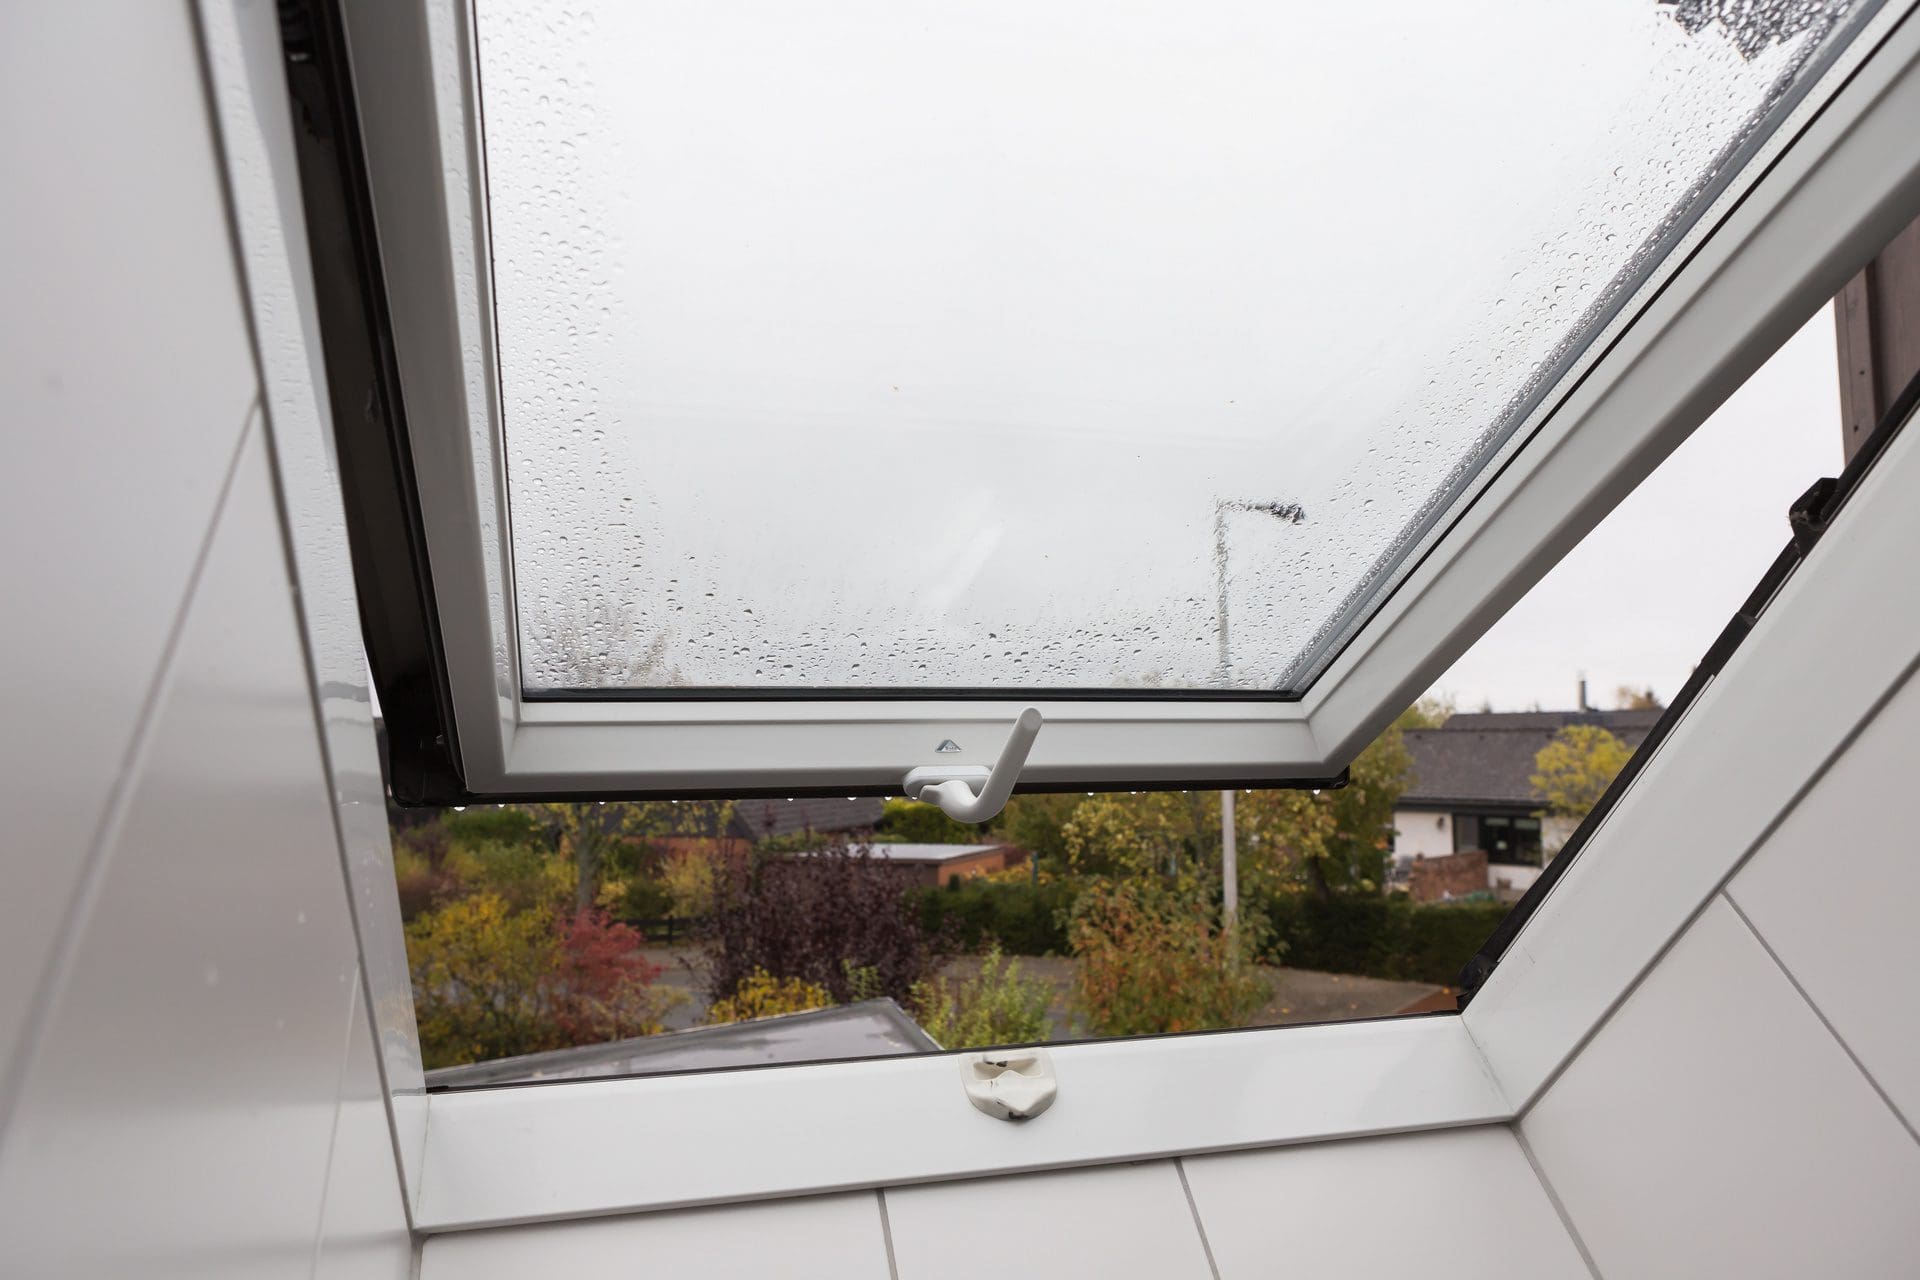 Wer zahlt für Schäden durch Regen, die durch ein offenes Dachfenster eindringen? (© Benjamin / stock.adobe.com)